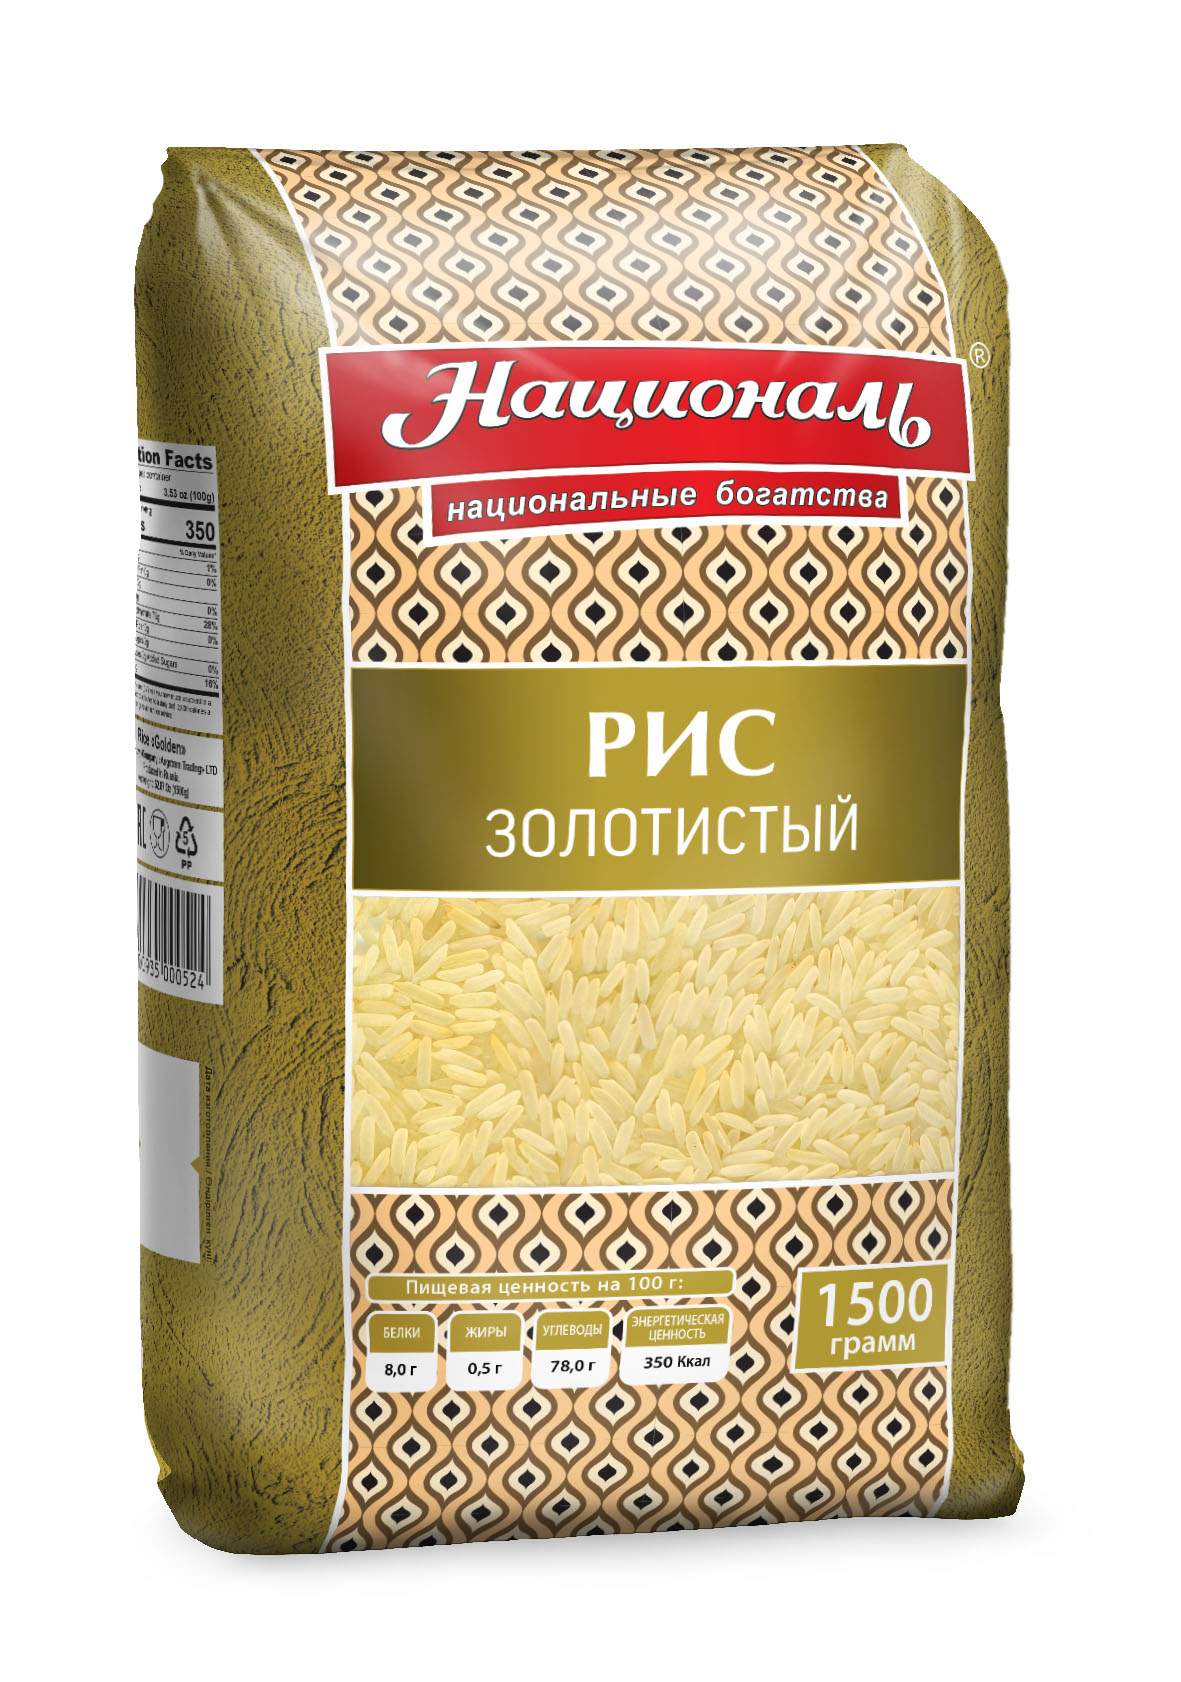 Рис Националь Золотистый 1,5 кг - купить в Мегамаркет Екб, цена на Мегамаркет